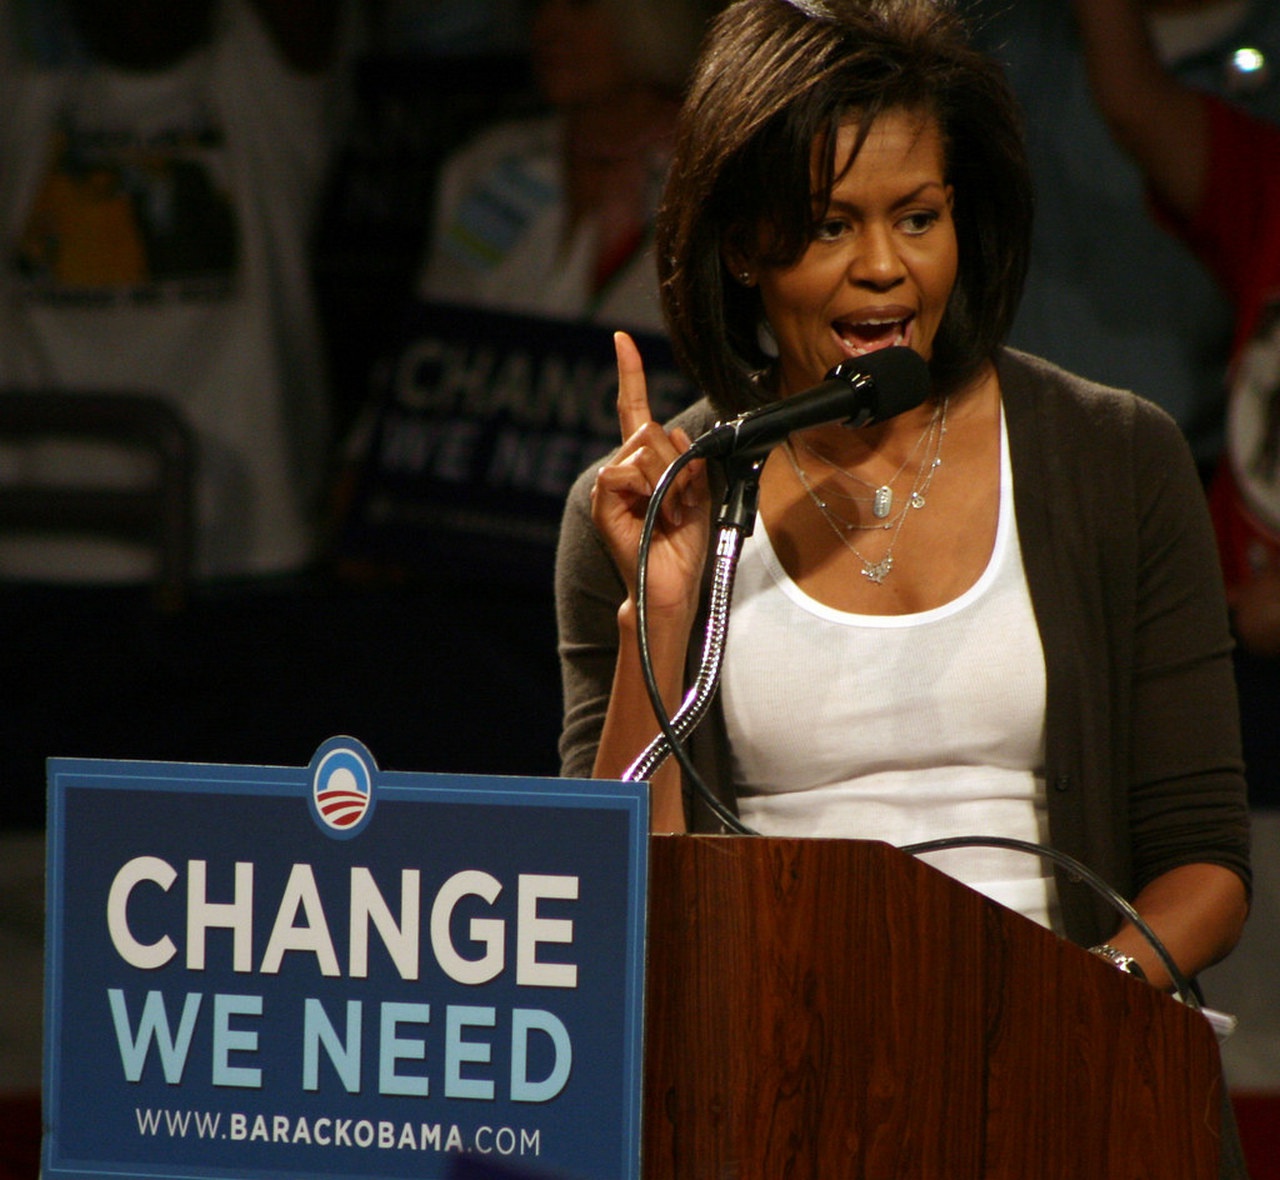 Даже став первой леди, Мишель Обама осталась активисткой «революции меньшинств».